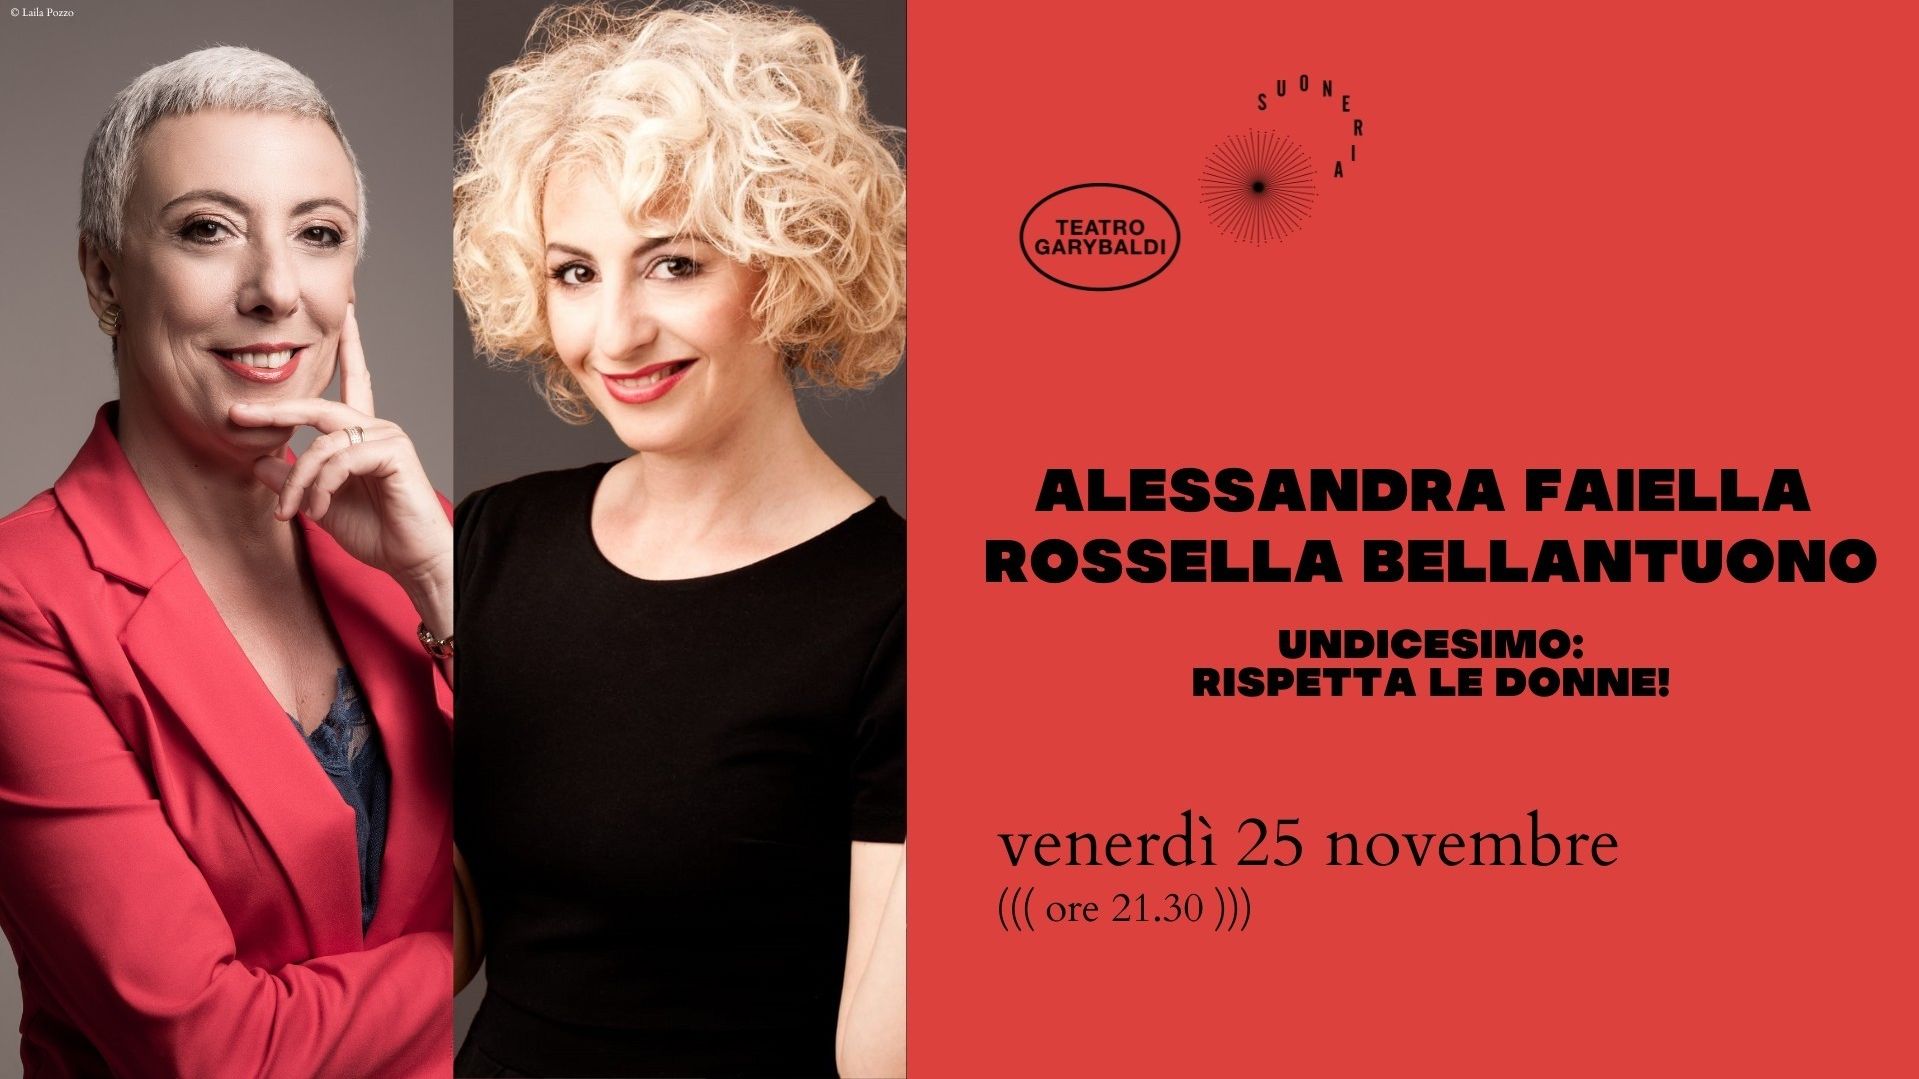 Alessandra Faiella e Rossella Bellantuono "Undicesimo: rispetta le donne!"